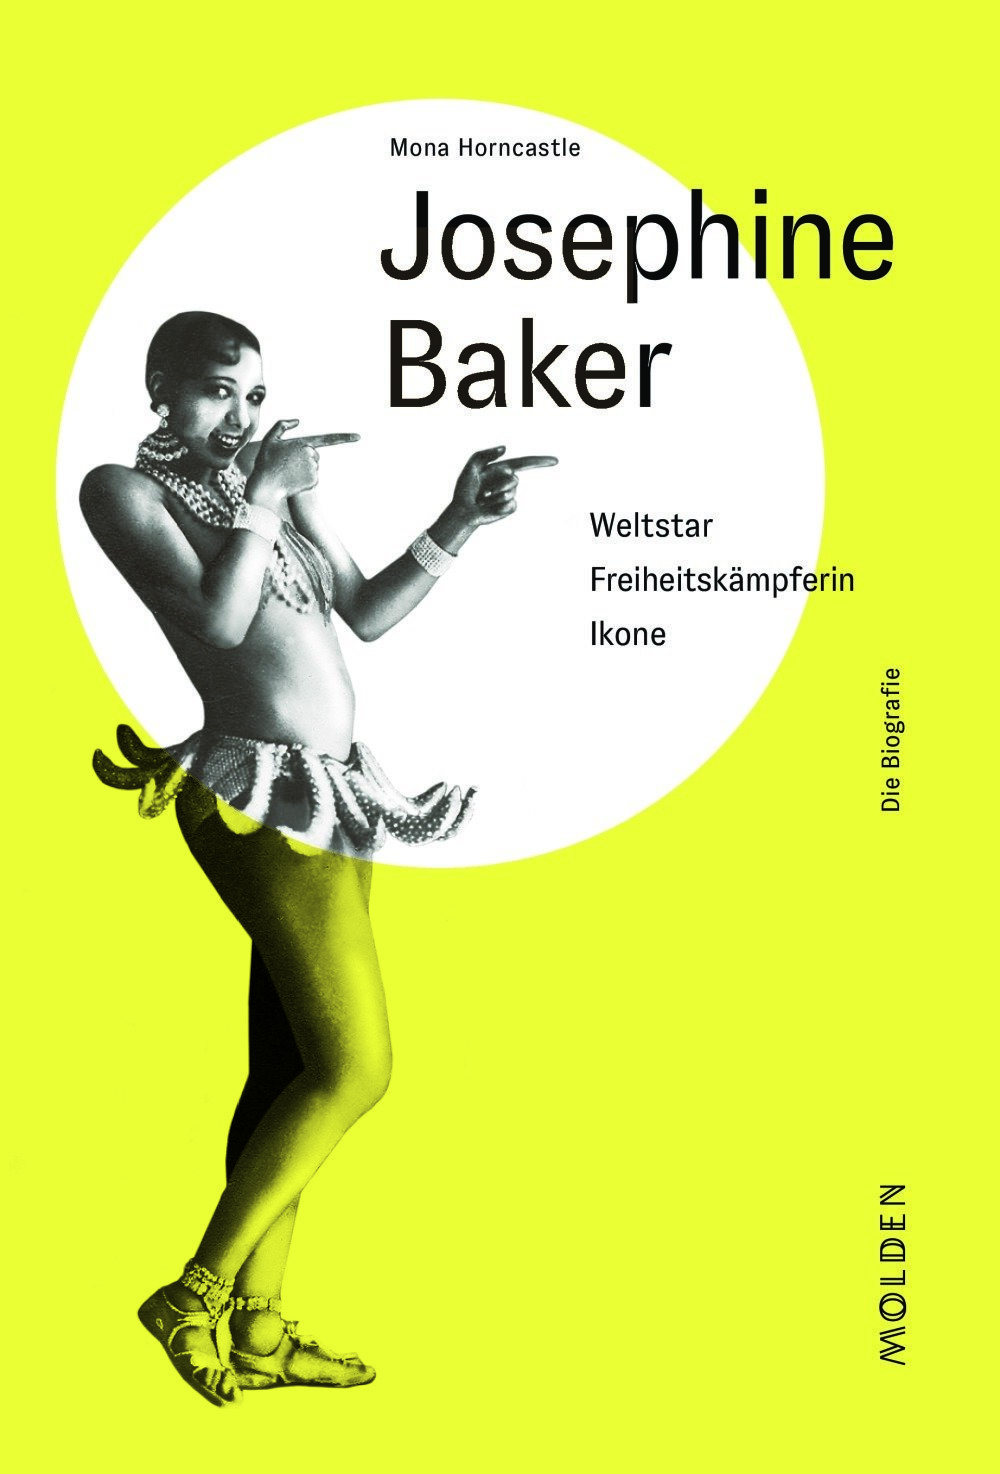 9783222150463 - Josephine Baker